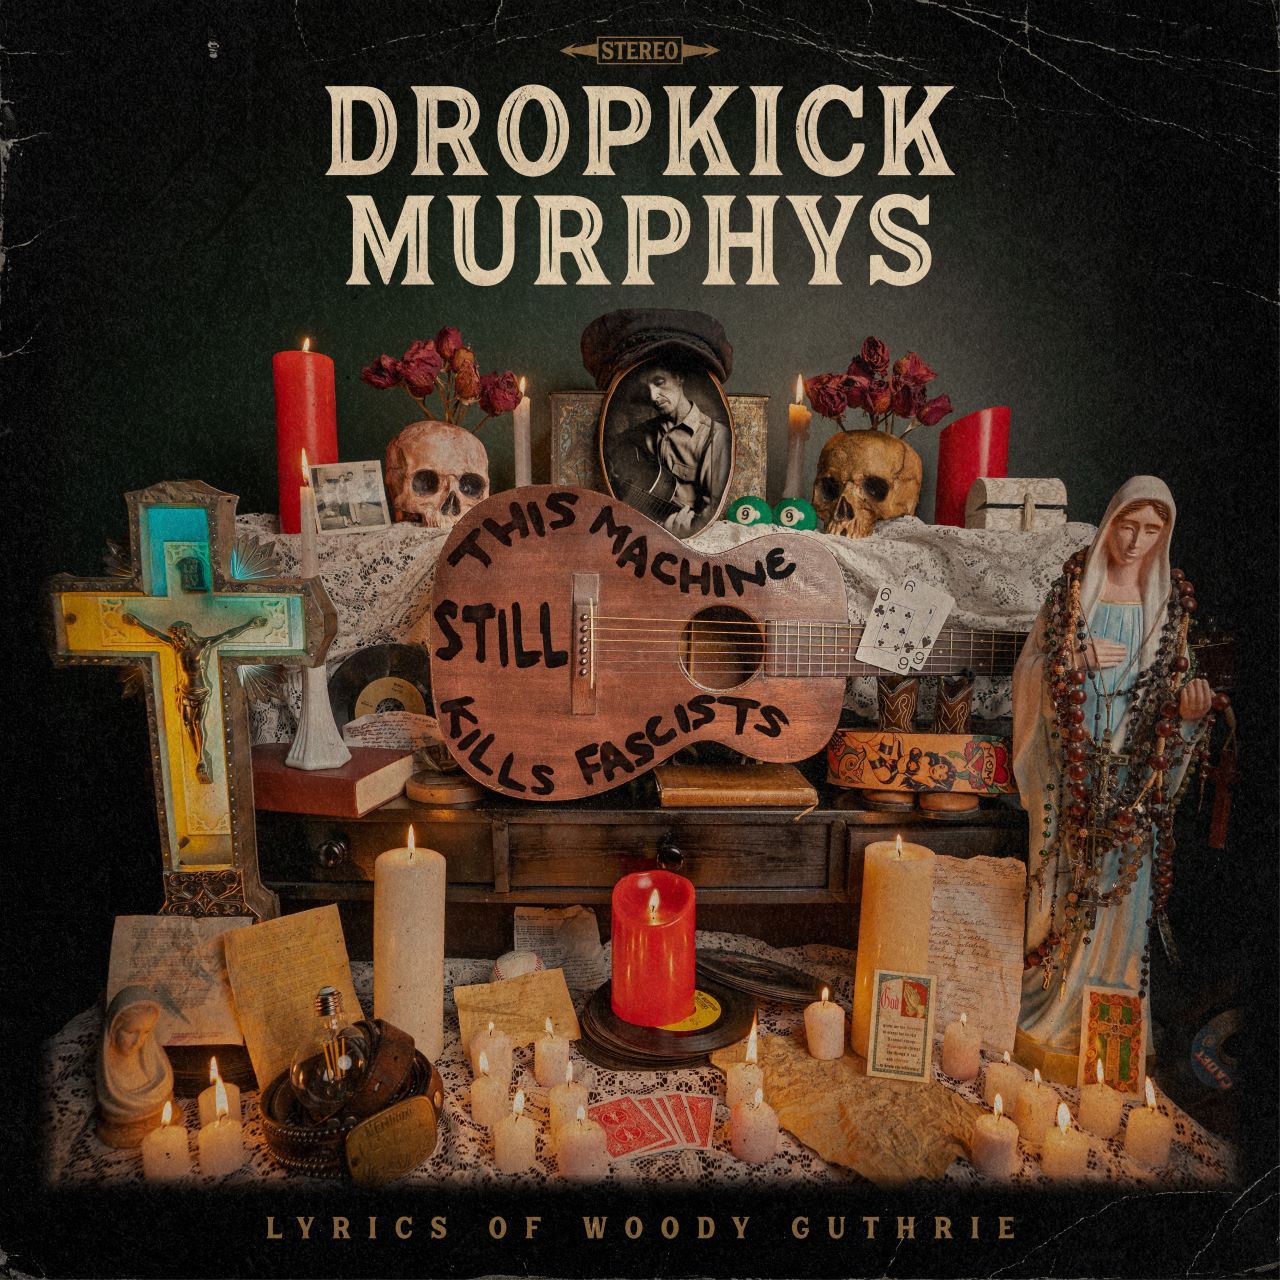 Dropkick Murphys - This Machine Still Kills Fascists cover album